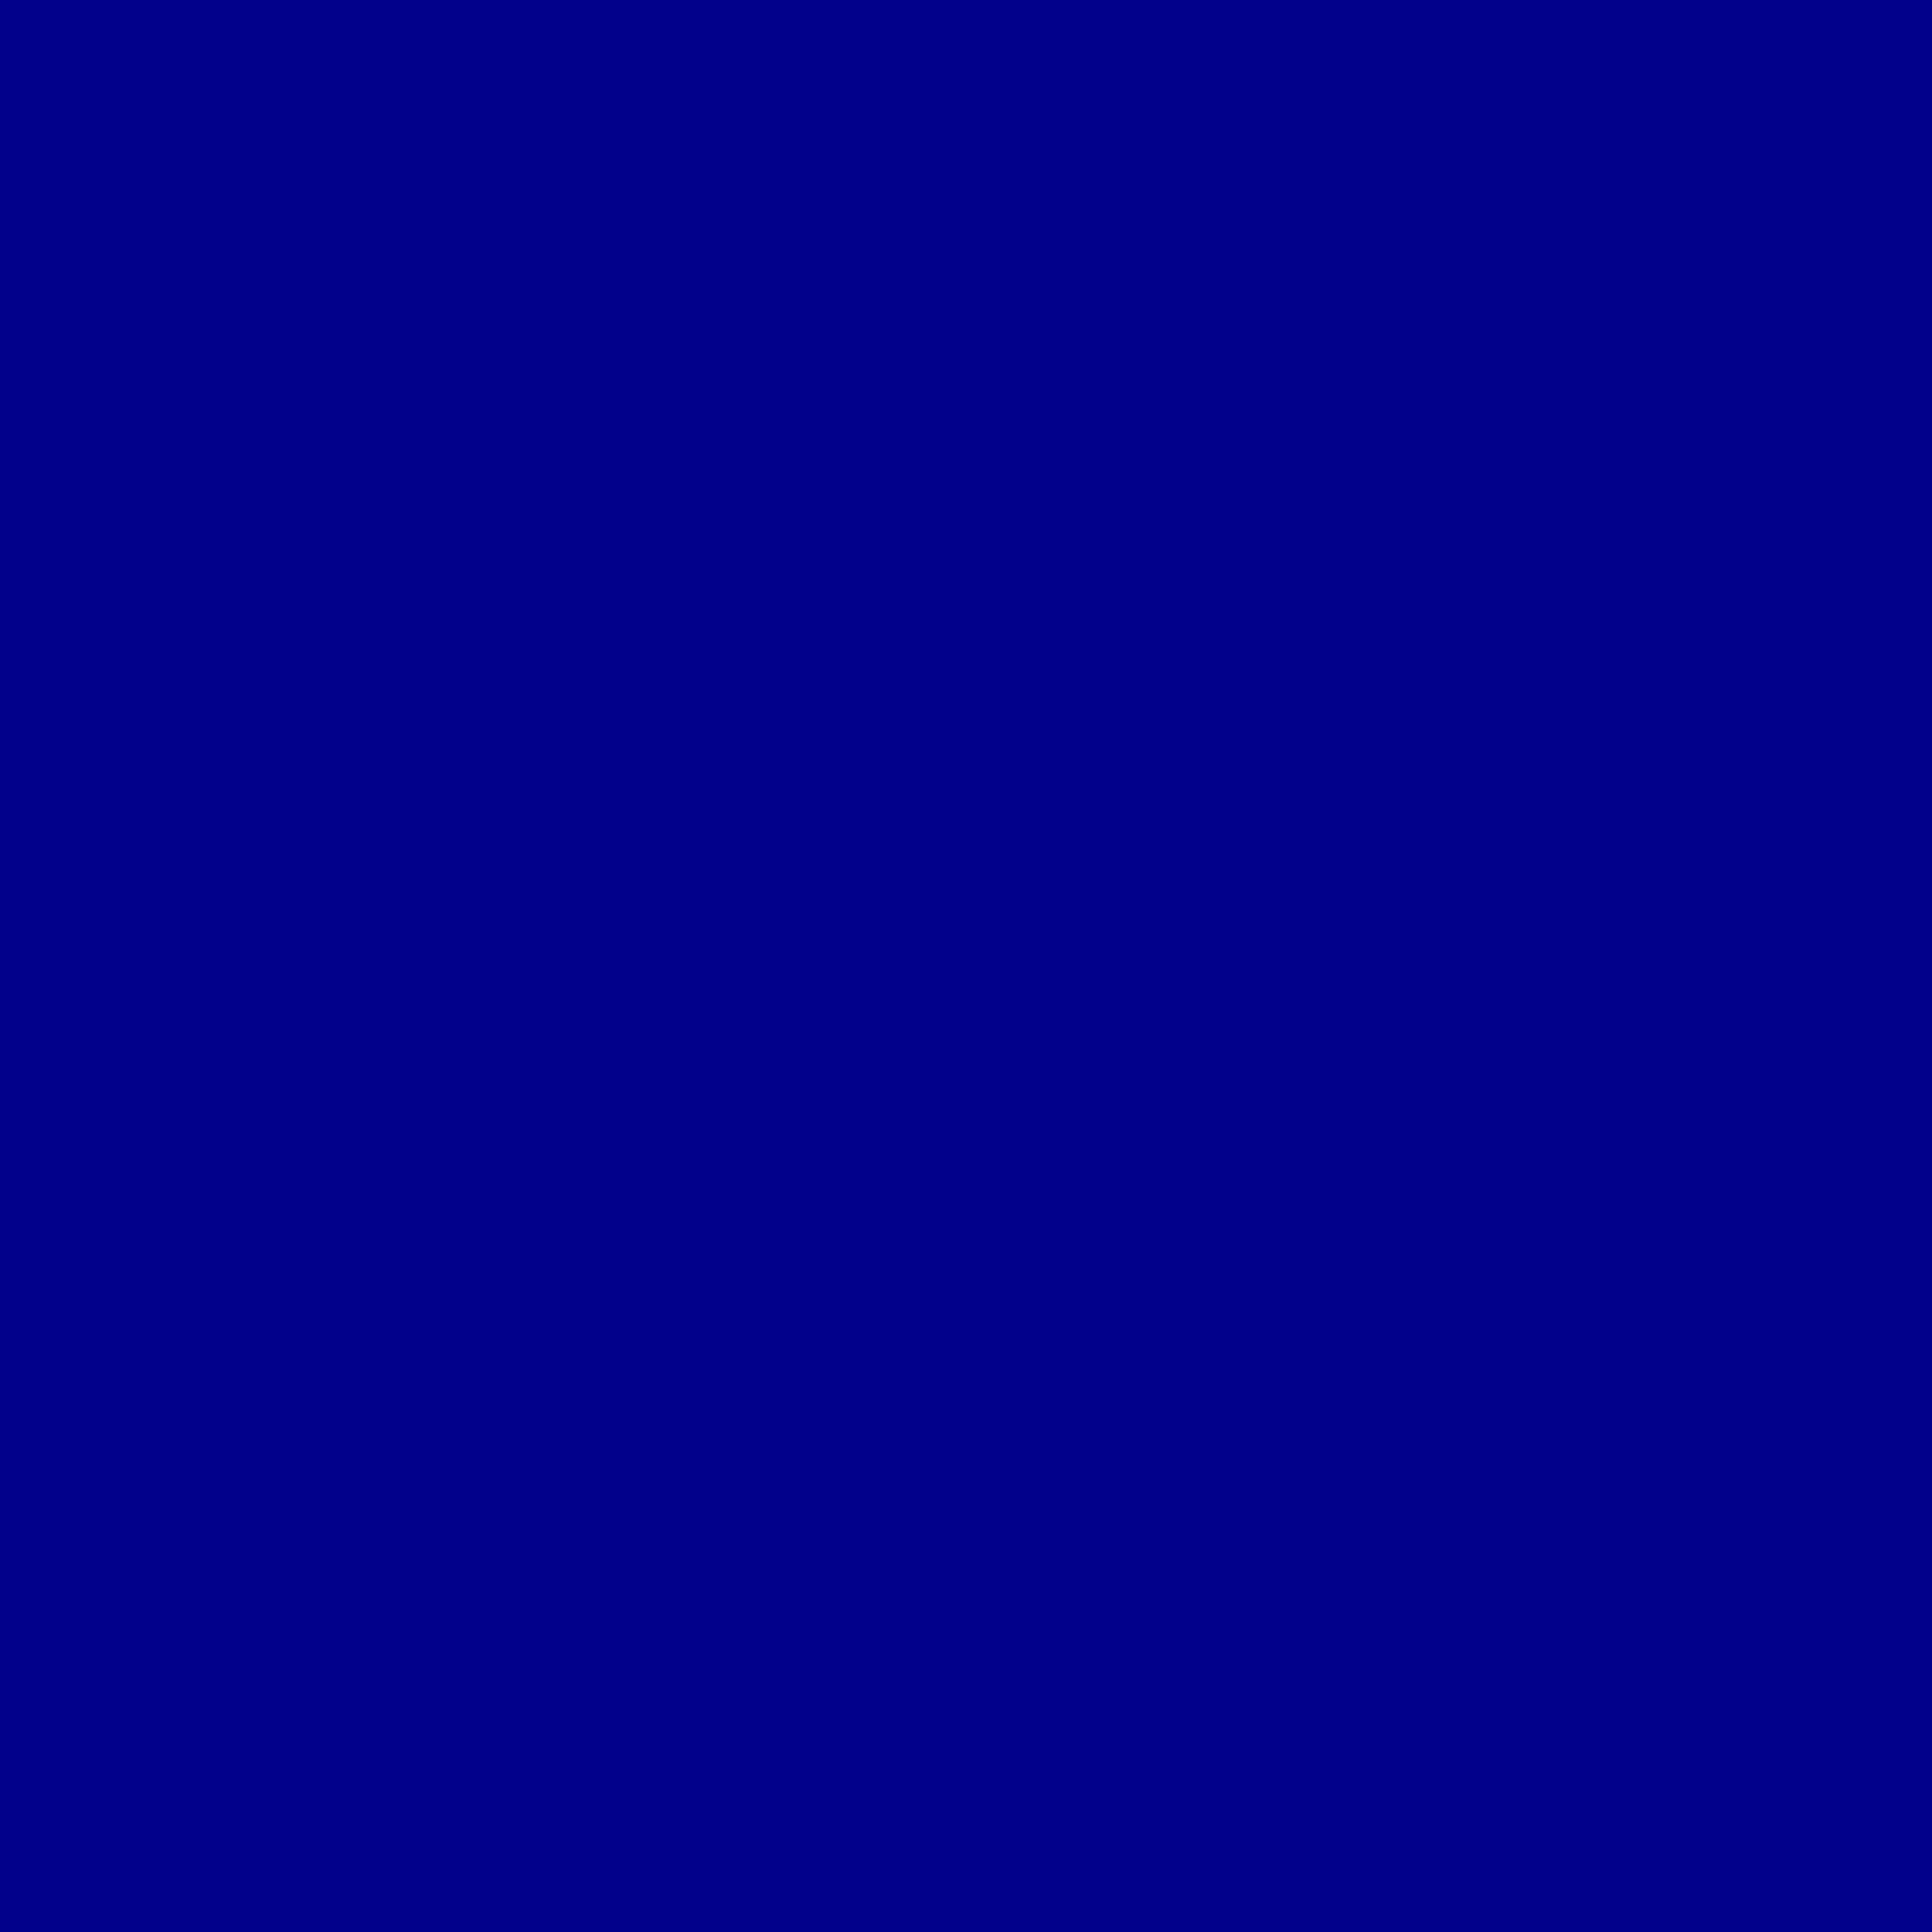 Solid Blue Background Dark